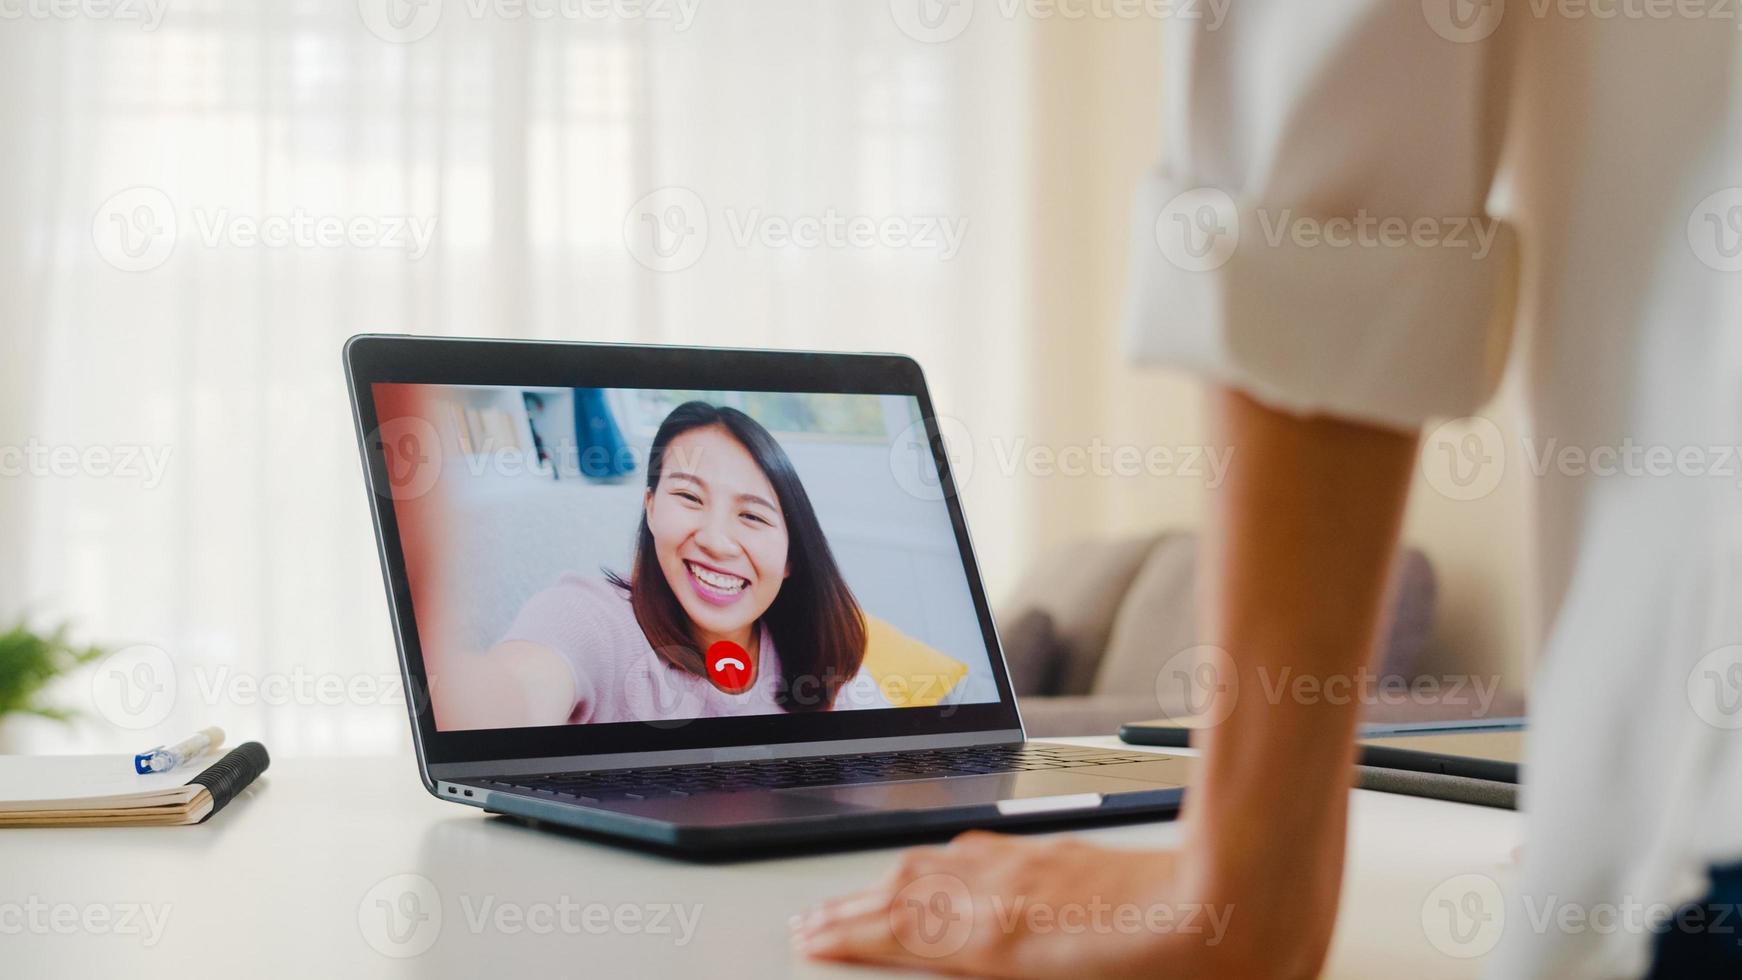 jonge Aziatische zakenvrouw met behulp van laptop videogesprek praten met vrienden tijdens het werken vanuit huis in de woonkamer. zelfisolatie, sociale afstand, quarantaine voor coronavirus in het volgende normale concept. foto